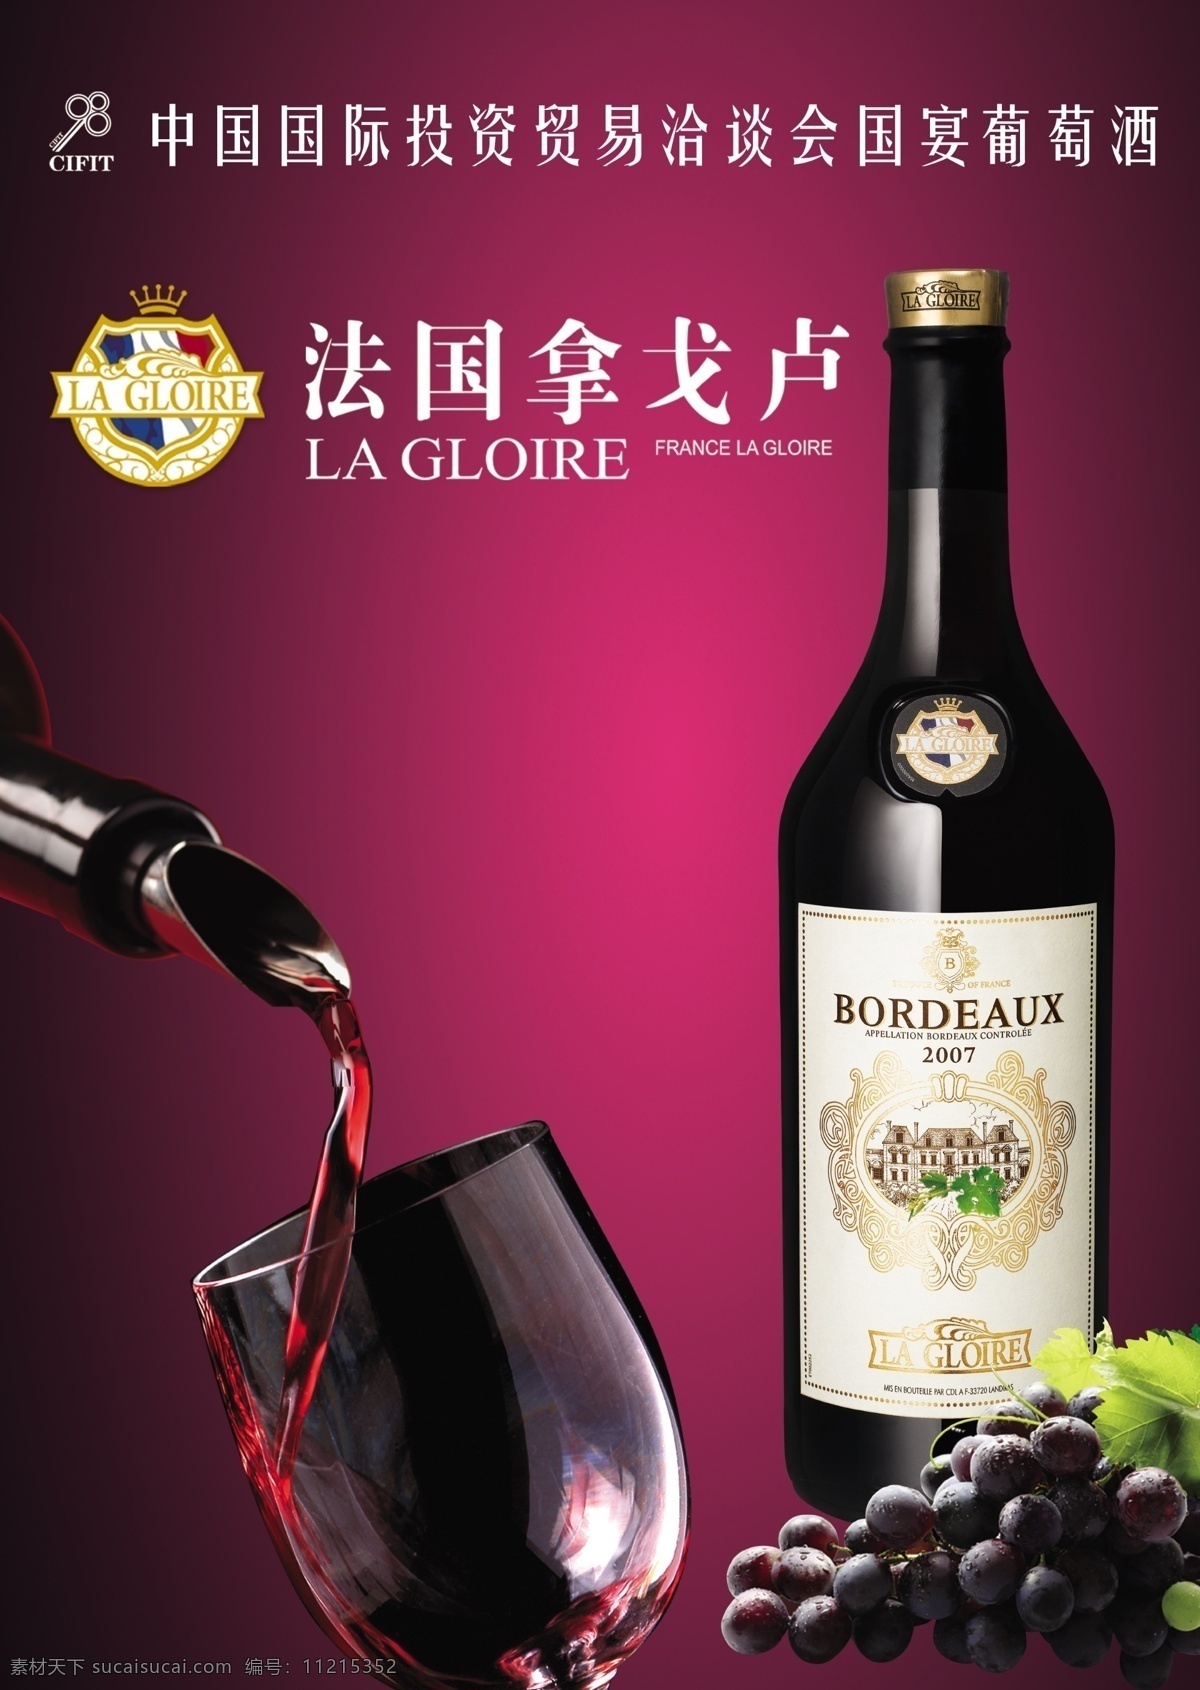 法国 广告设计模板 酒杯 葡萄 源文件 葡萄酒 模板下载 法国葡萄酒 拿戈卢 国宴 其他海报设计